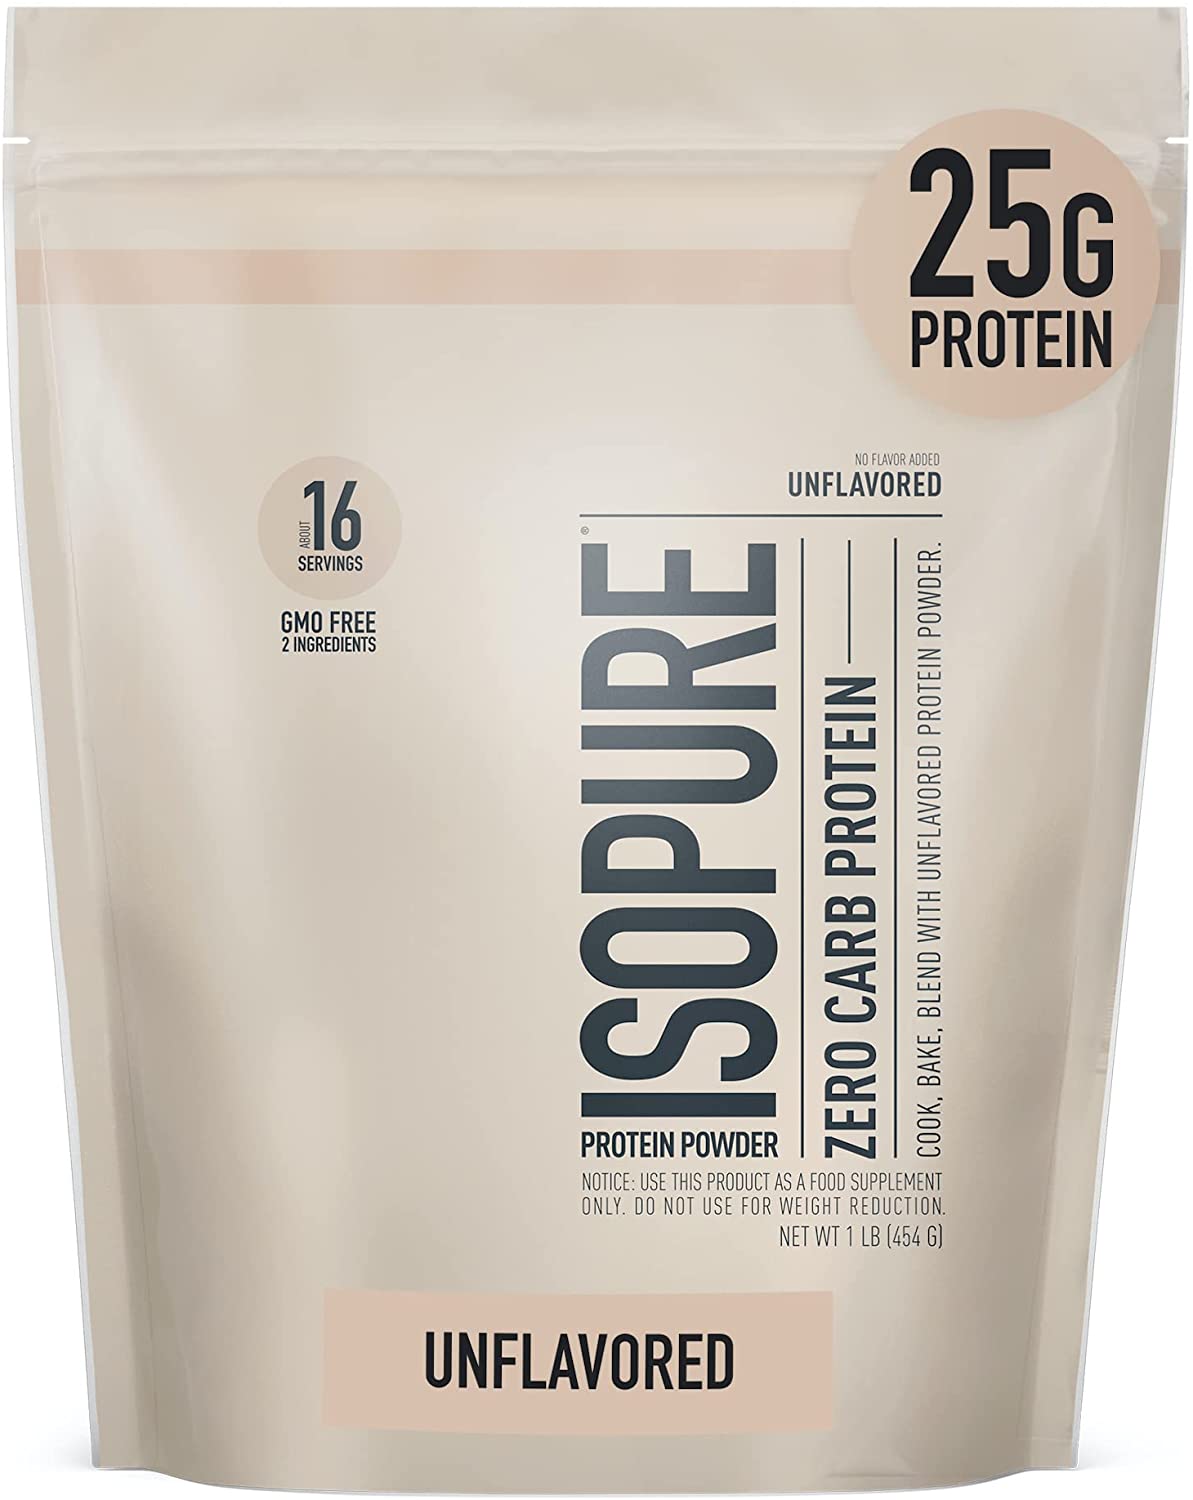 Isopure Protein Powder, Whey Protein Isolate Powder, 25g Protein, Zero Carb & Keto Friendly